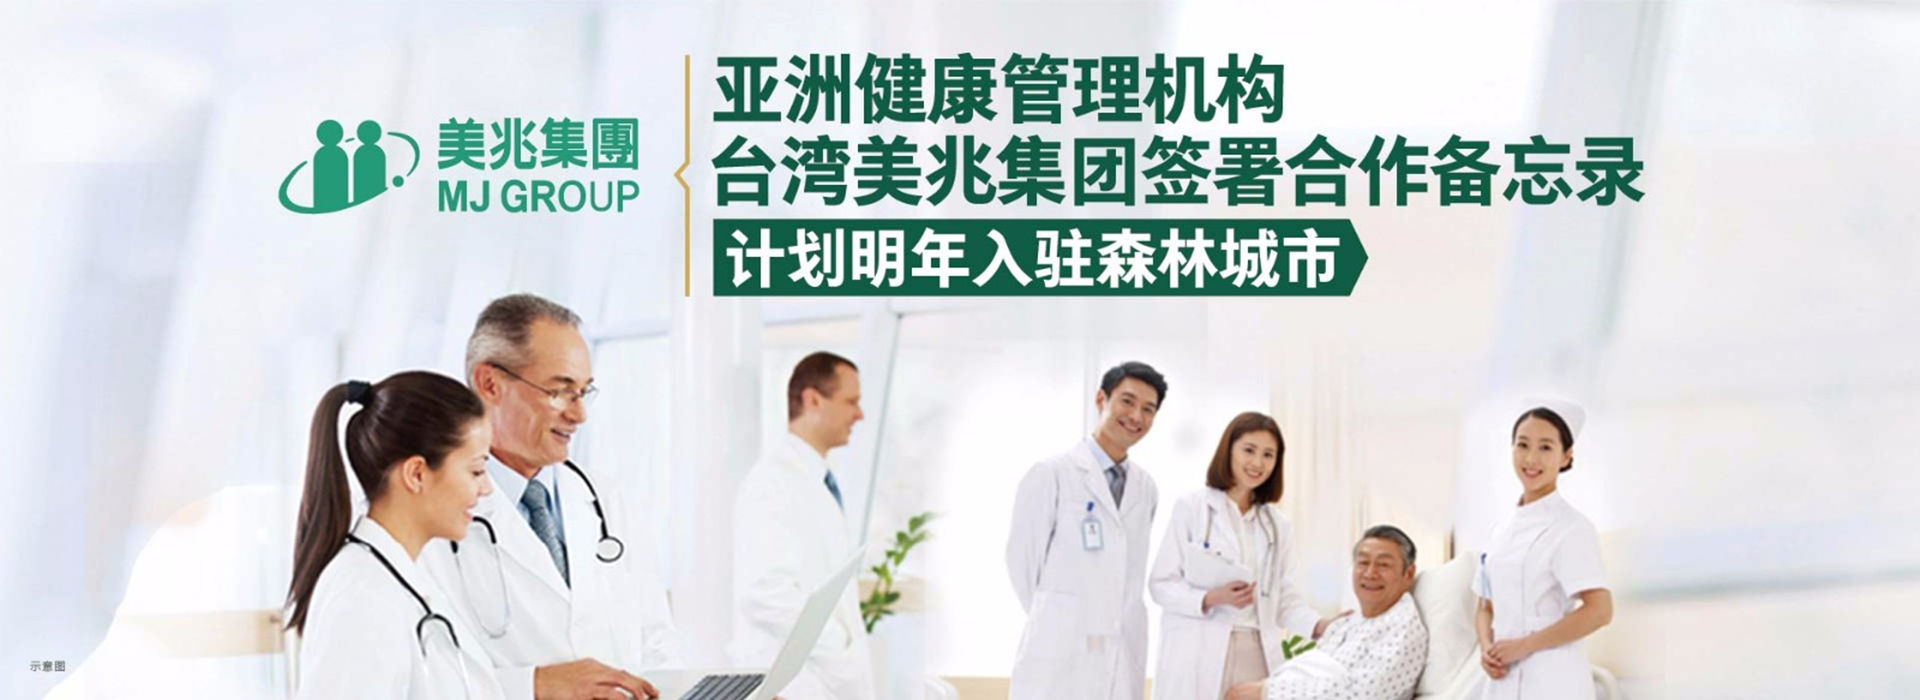 亚洲健康管理机构——台湾美兆集团计划入驻4008com云顶集团